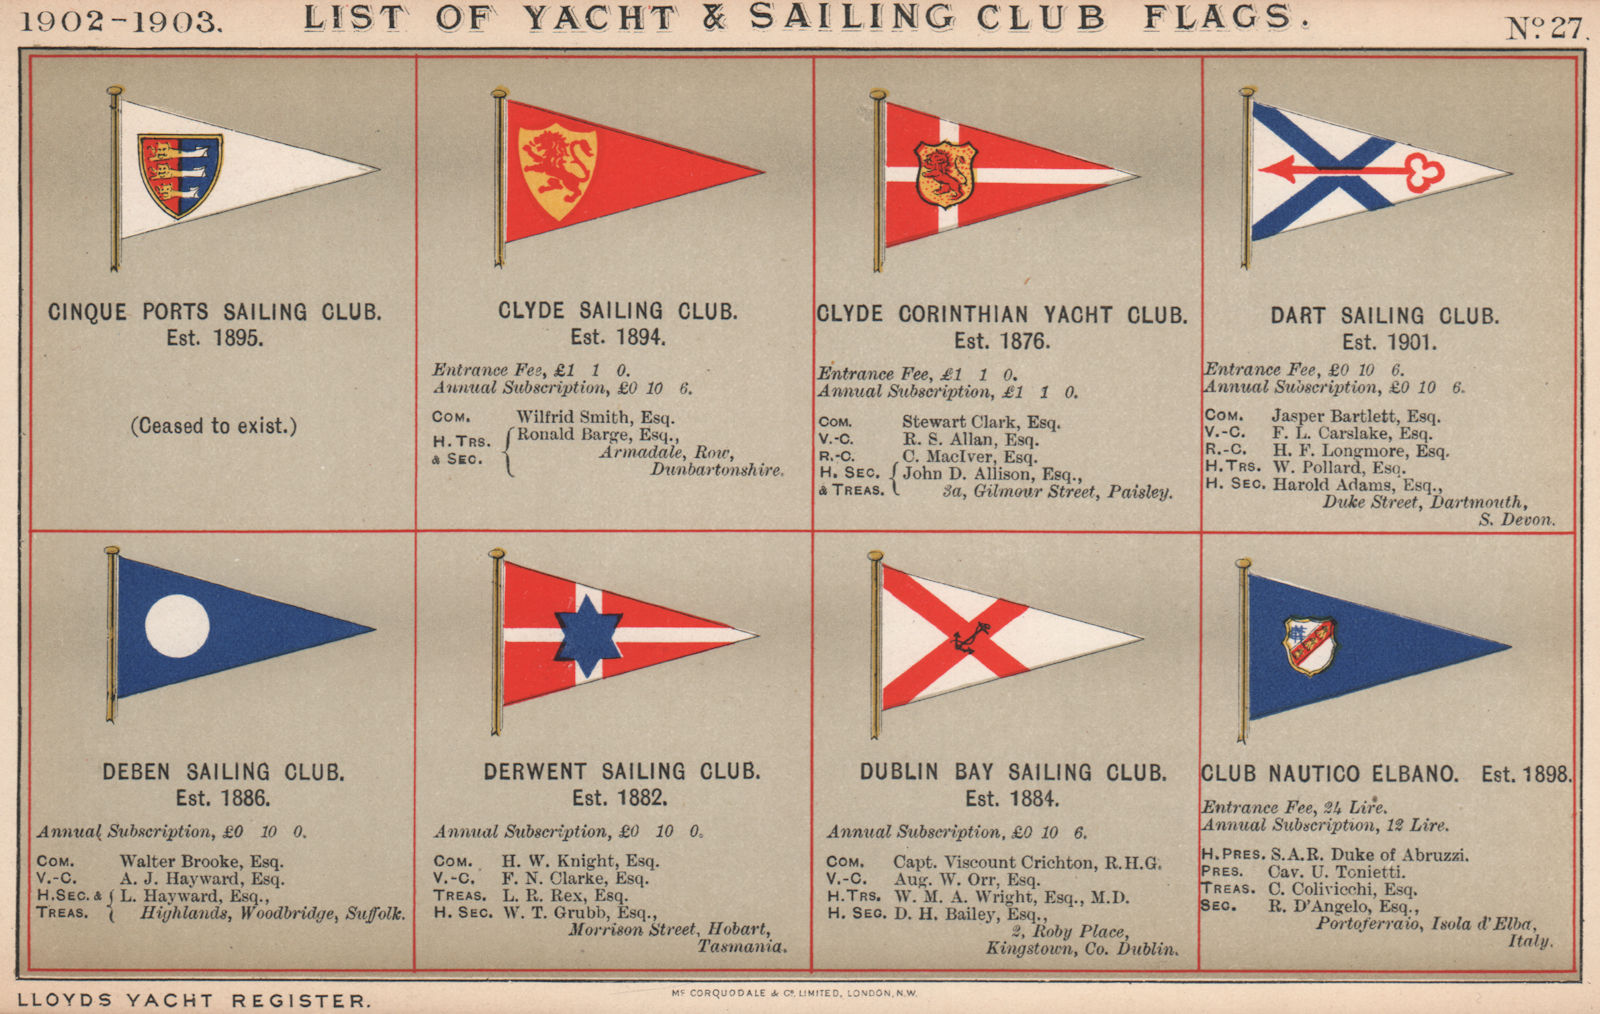 YACHT & SAILING CLUB FLAGS C-E. Cinque Ports - Clyde - Dublin Bay - Elbano 1902